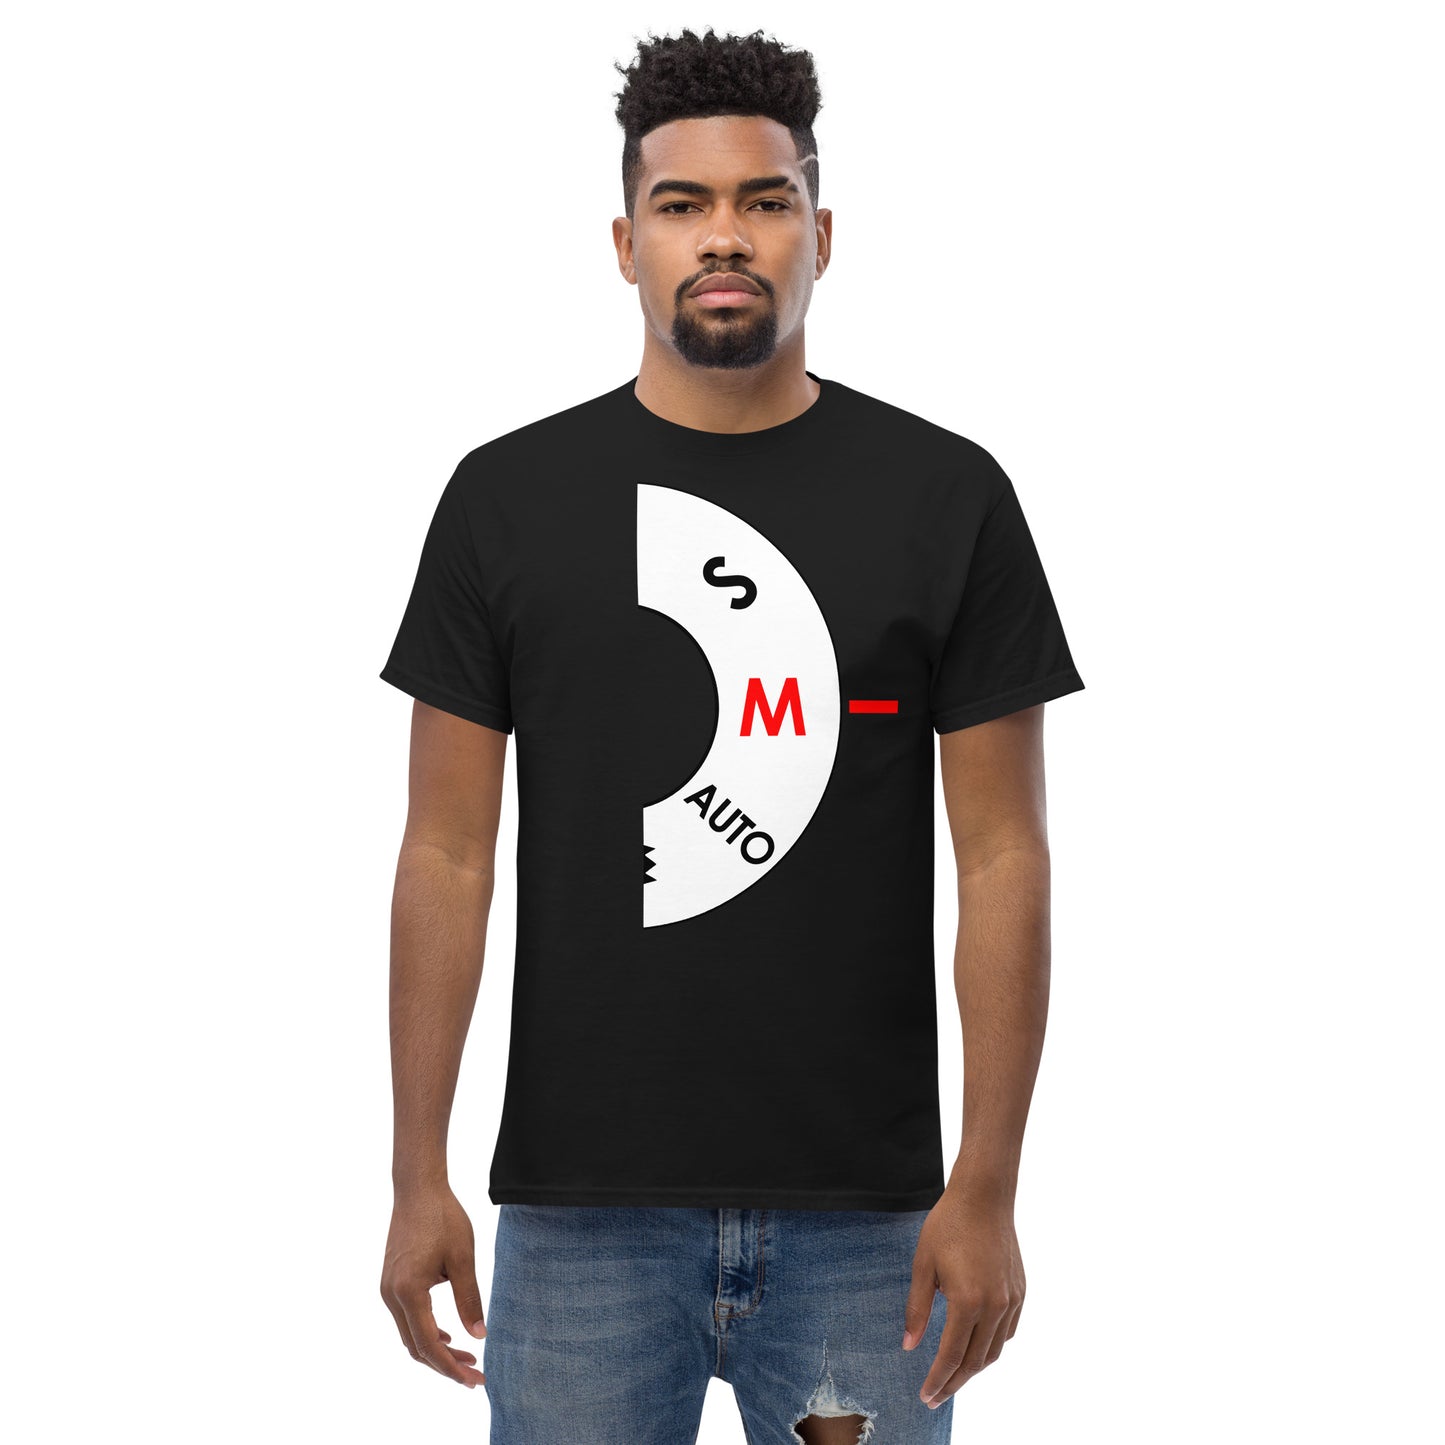 Männer-T-Shirts - Handbuch - Weißes Logo